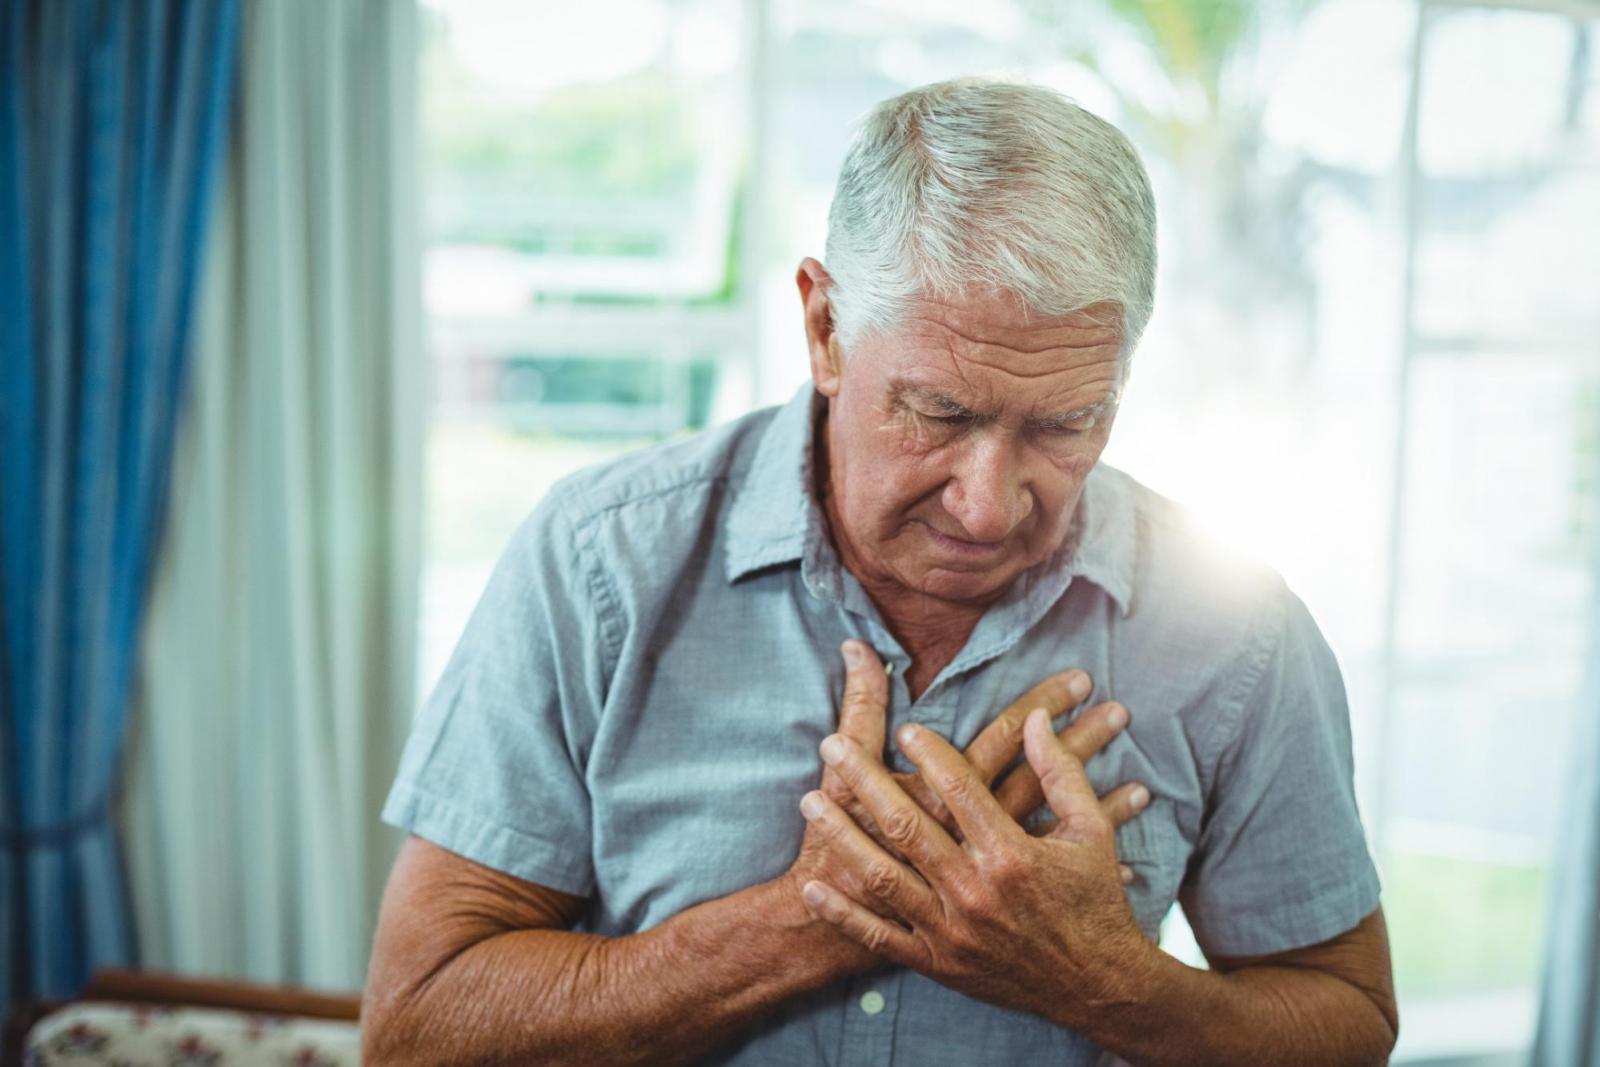 Suy tim phải - Biến chứng bệnh phổi tắc nghẽn mạn tính nguy hiểm